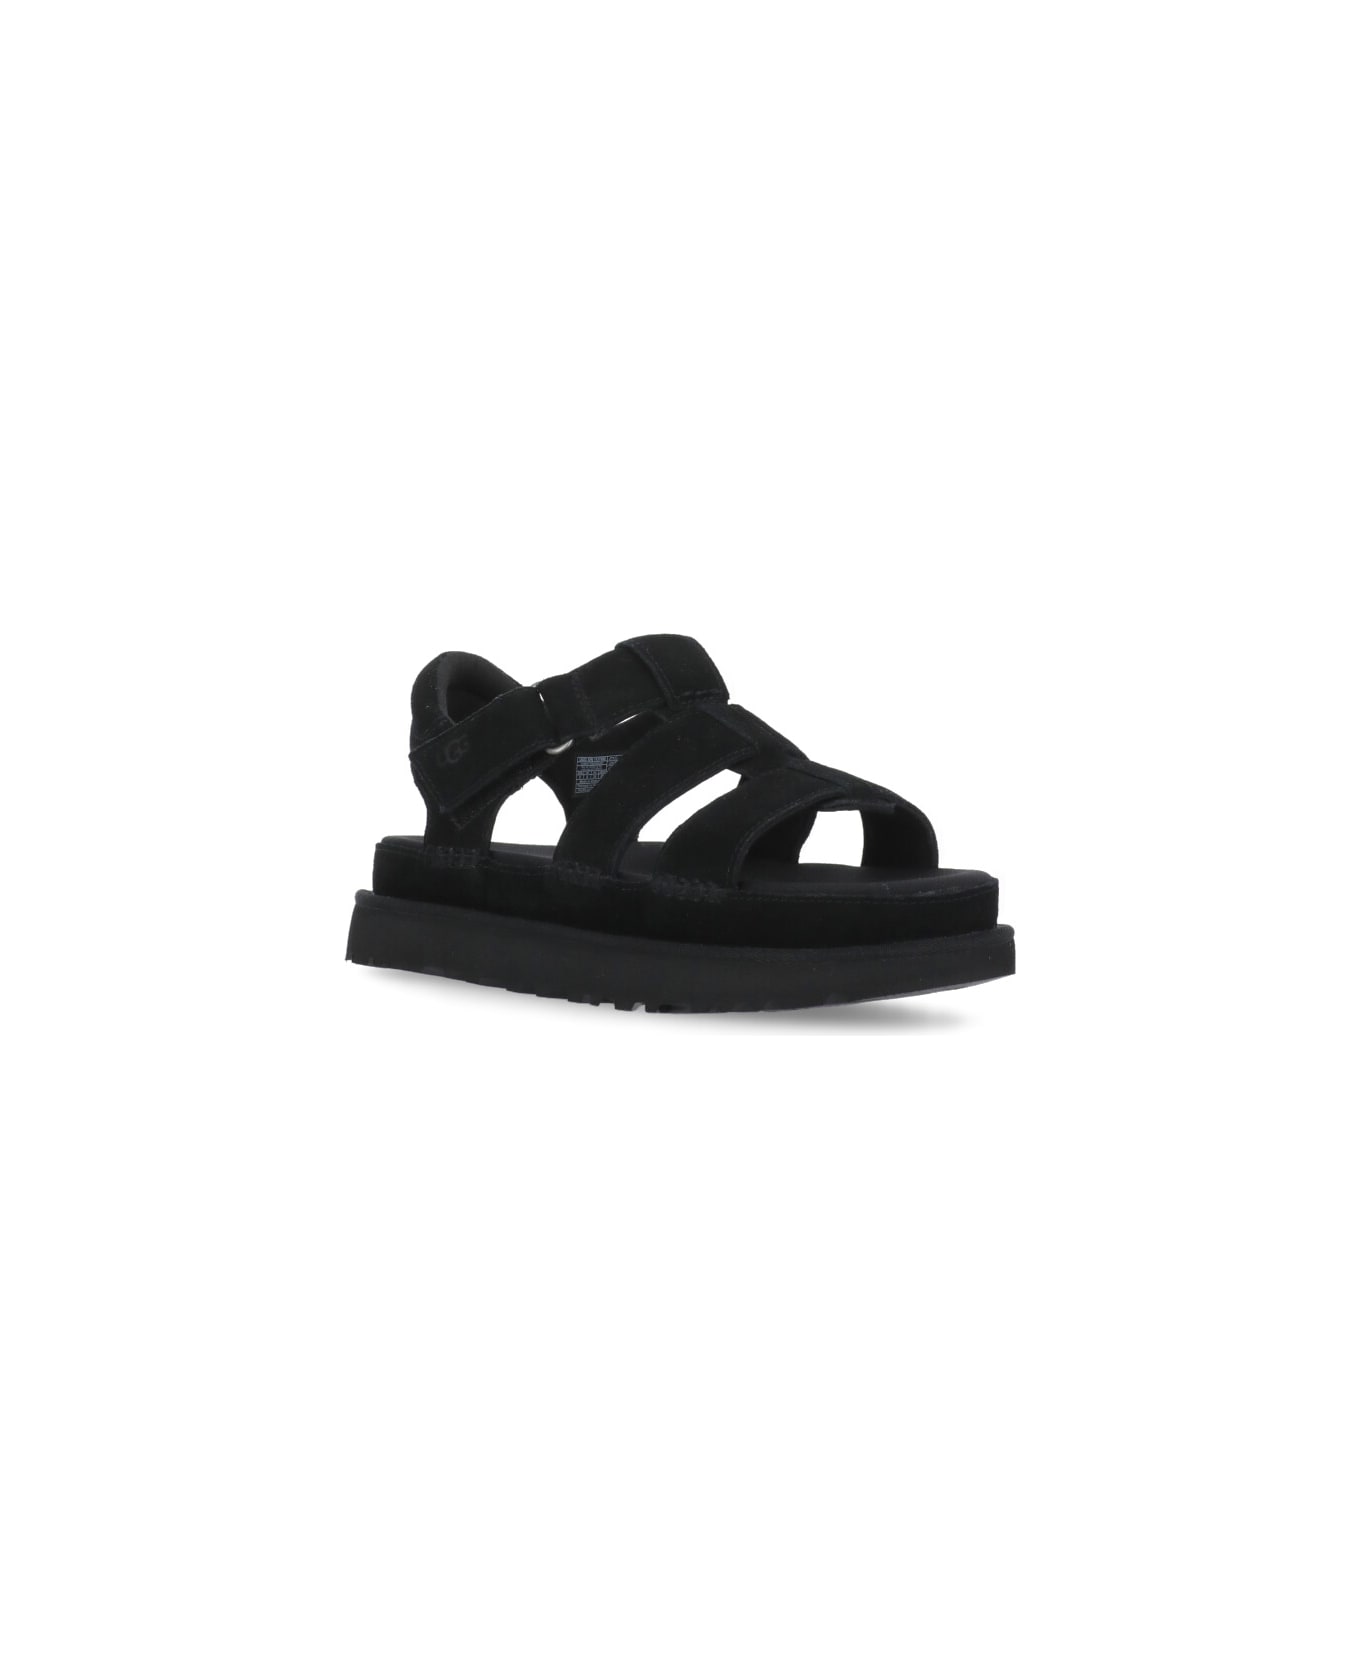 UGG Goldenstar Strap Sandals - Black